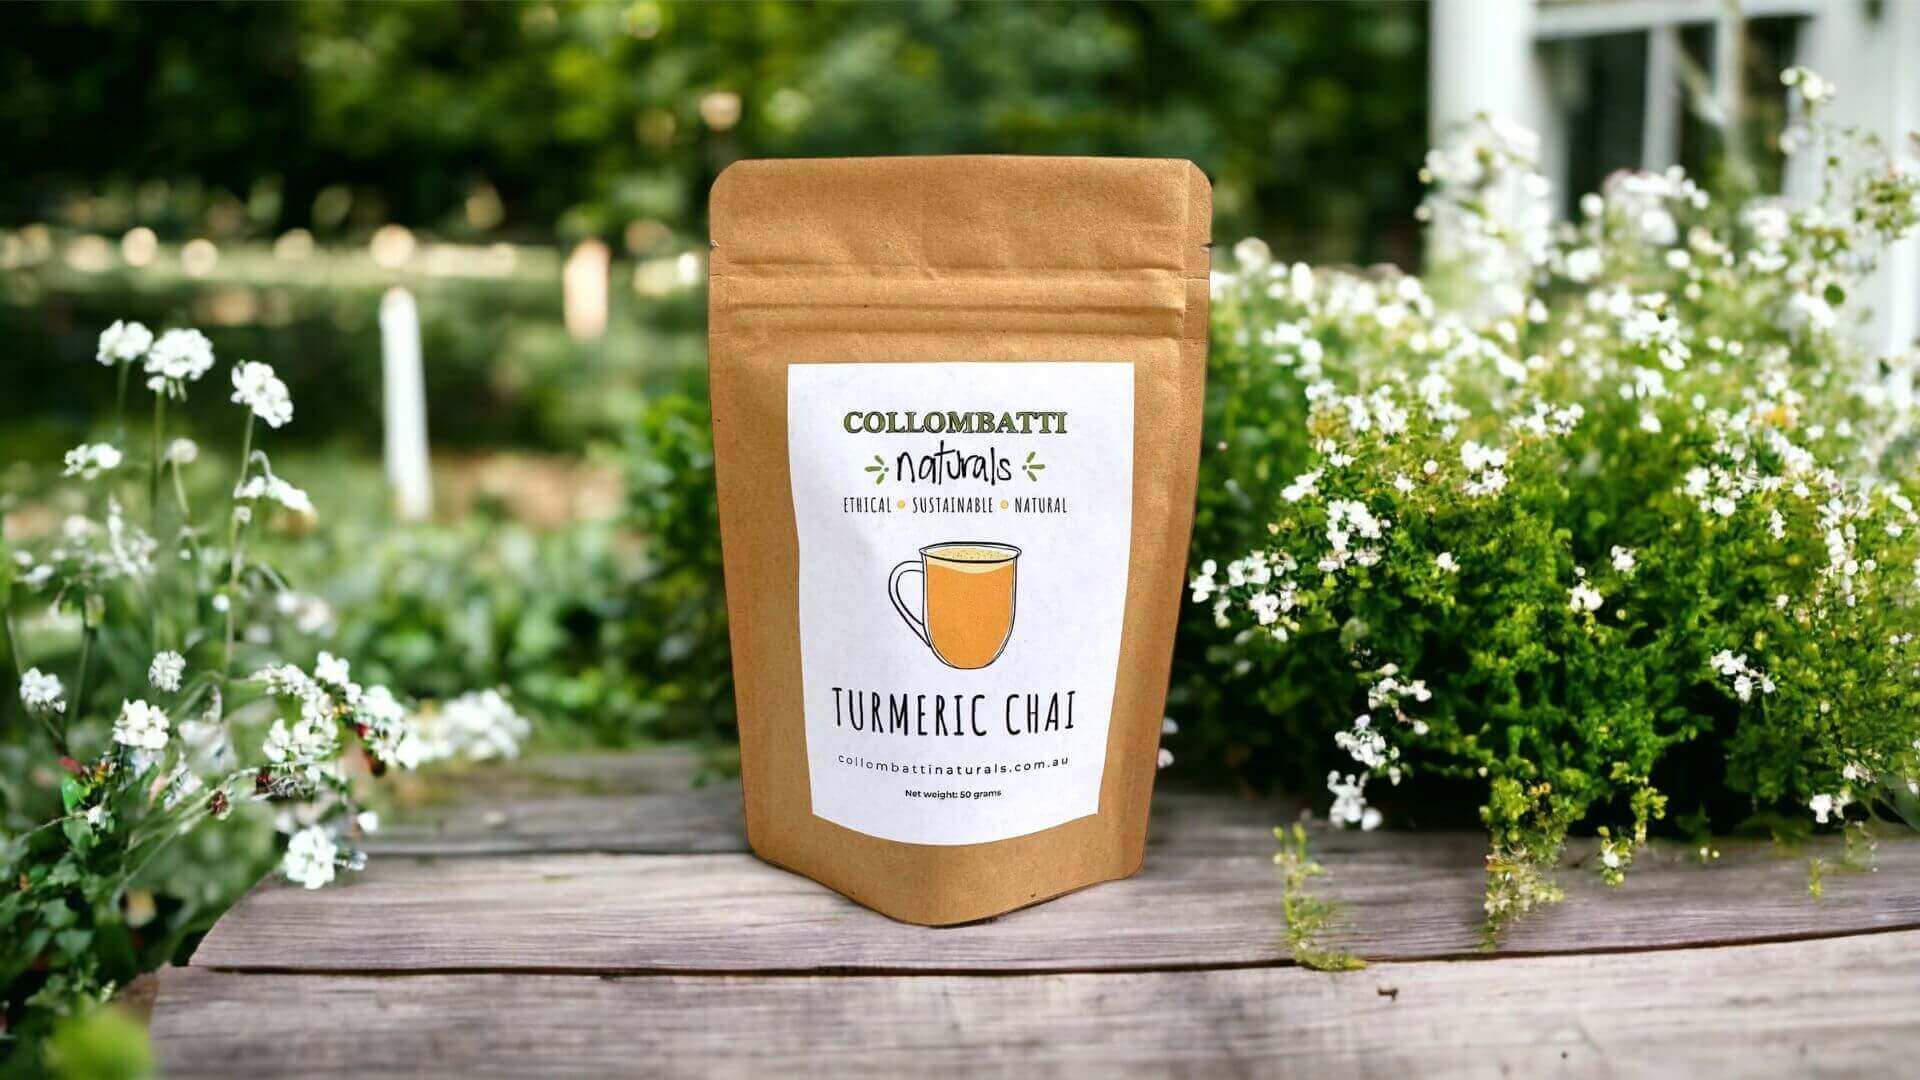 Collombatti Naturals Turmeric Chai in a biodegradable plastic-free bag